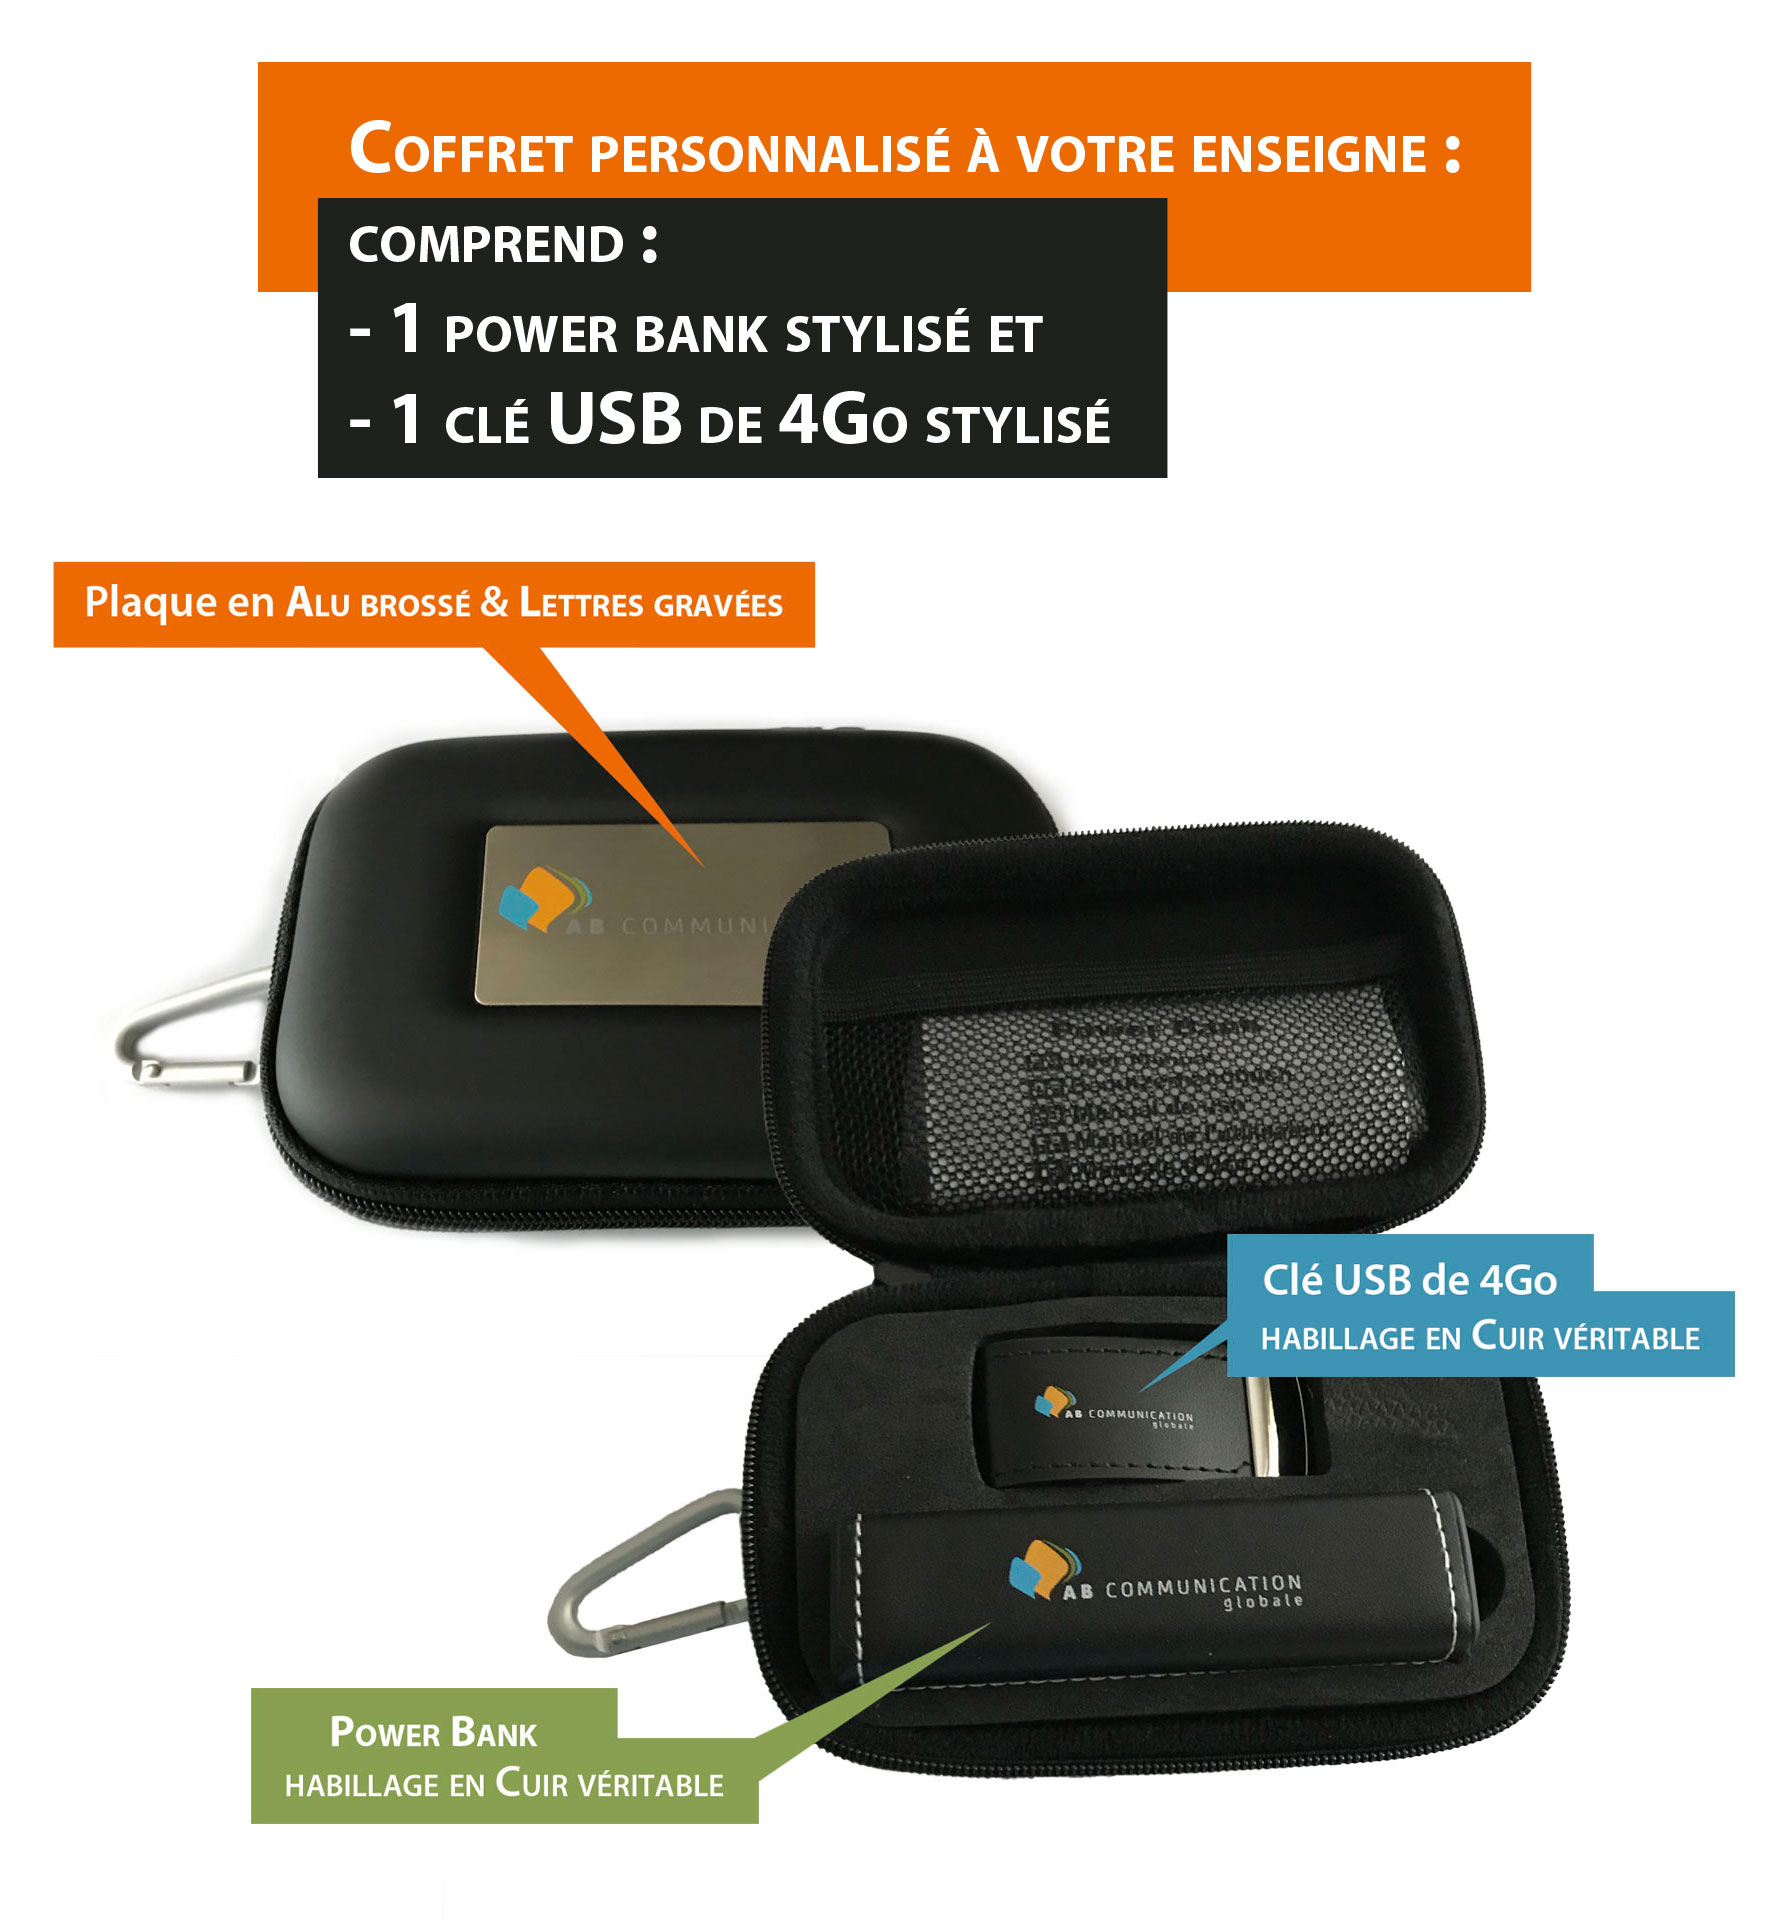 Coffret comprenant 1 POWER BANK et 1 clé USB 4Go, entièrement stylisé à votre enseigne et avec habillage en cuir